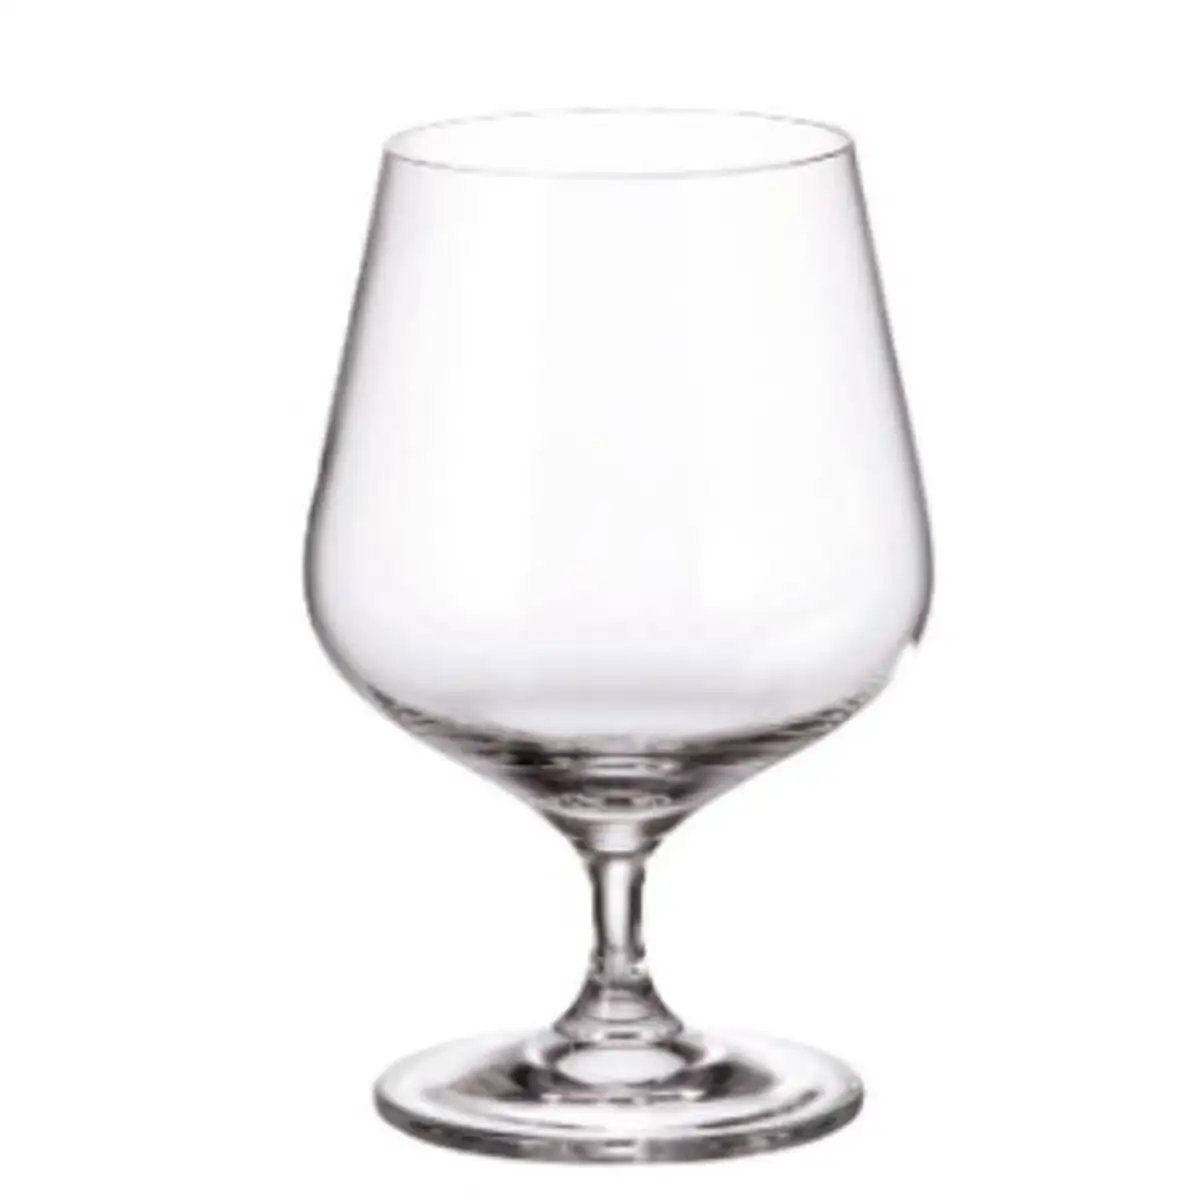 Set de verres bohemia crystal sira 590 ml cognac 4 unites_1171. DIAYTAR SENEGAL - Votre Destination Shopping Éthique. Parcourez notre gamme et choisissez des articles qui respectent l'environnement et les communautés locales.